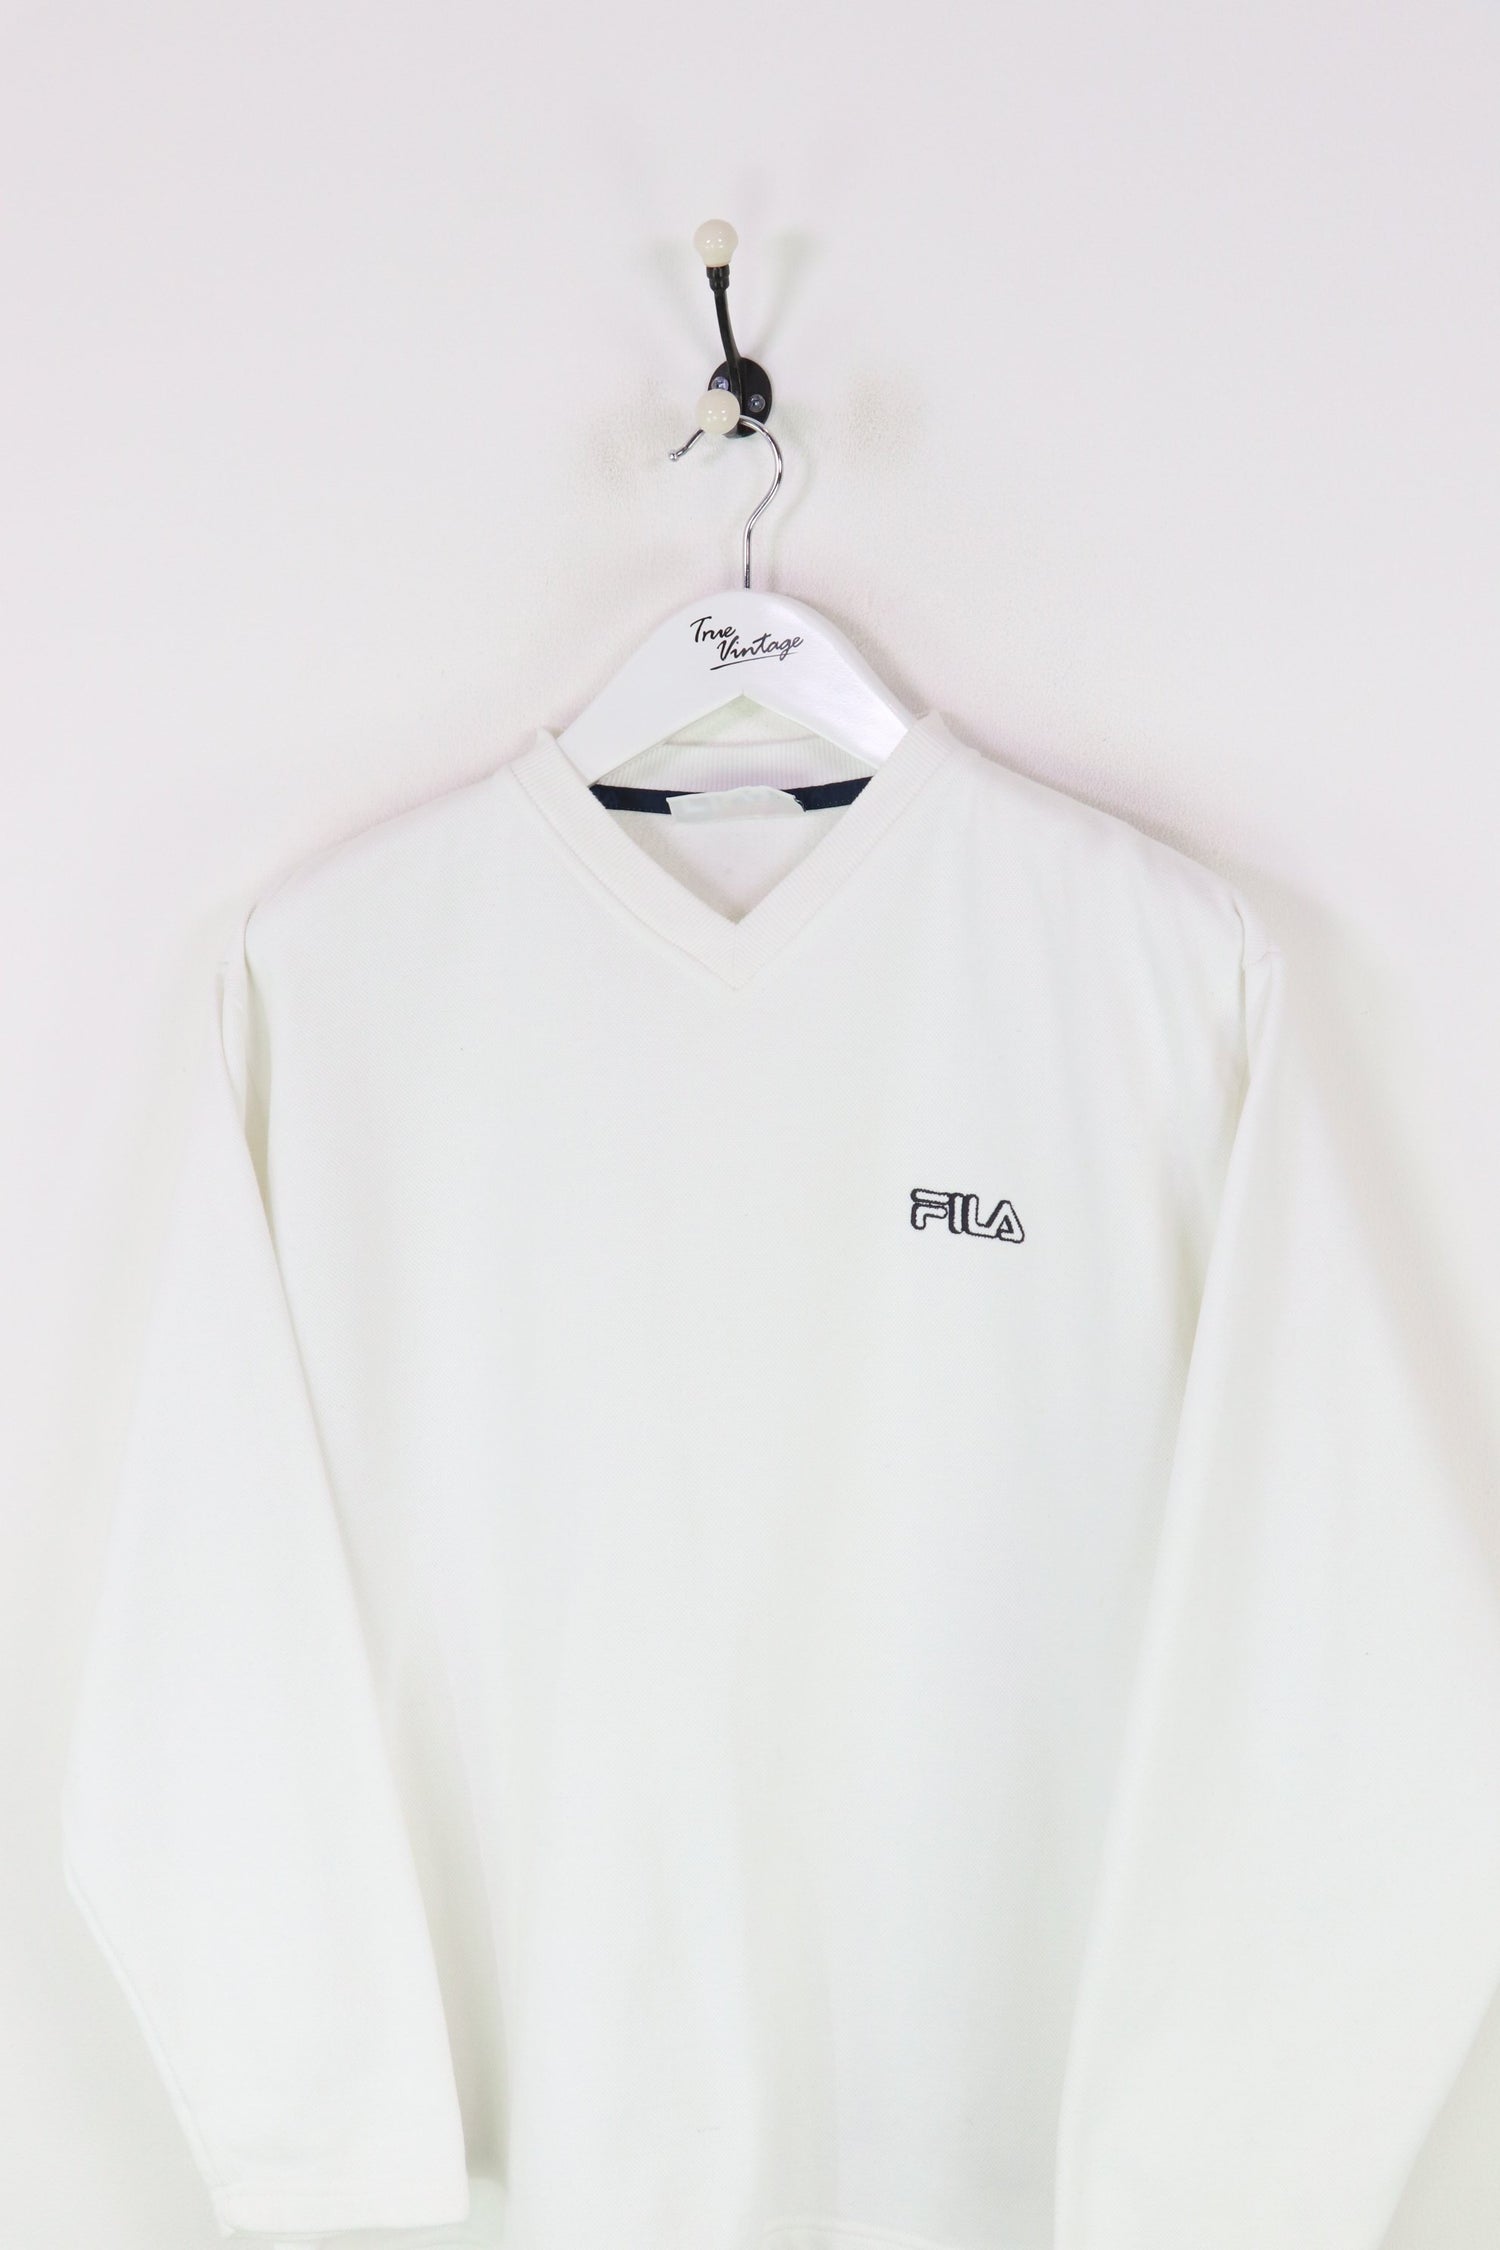 Fila Sweatshirt White Medium